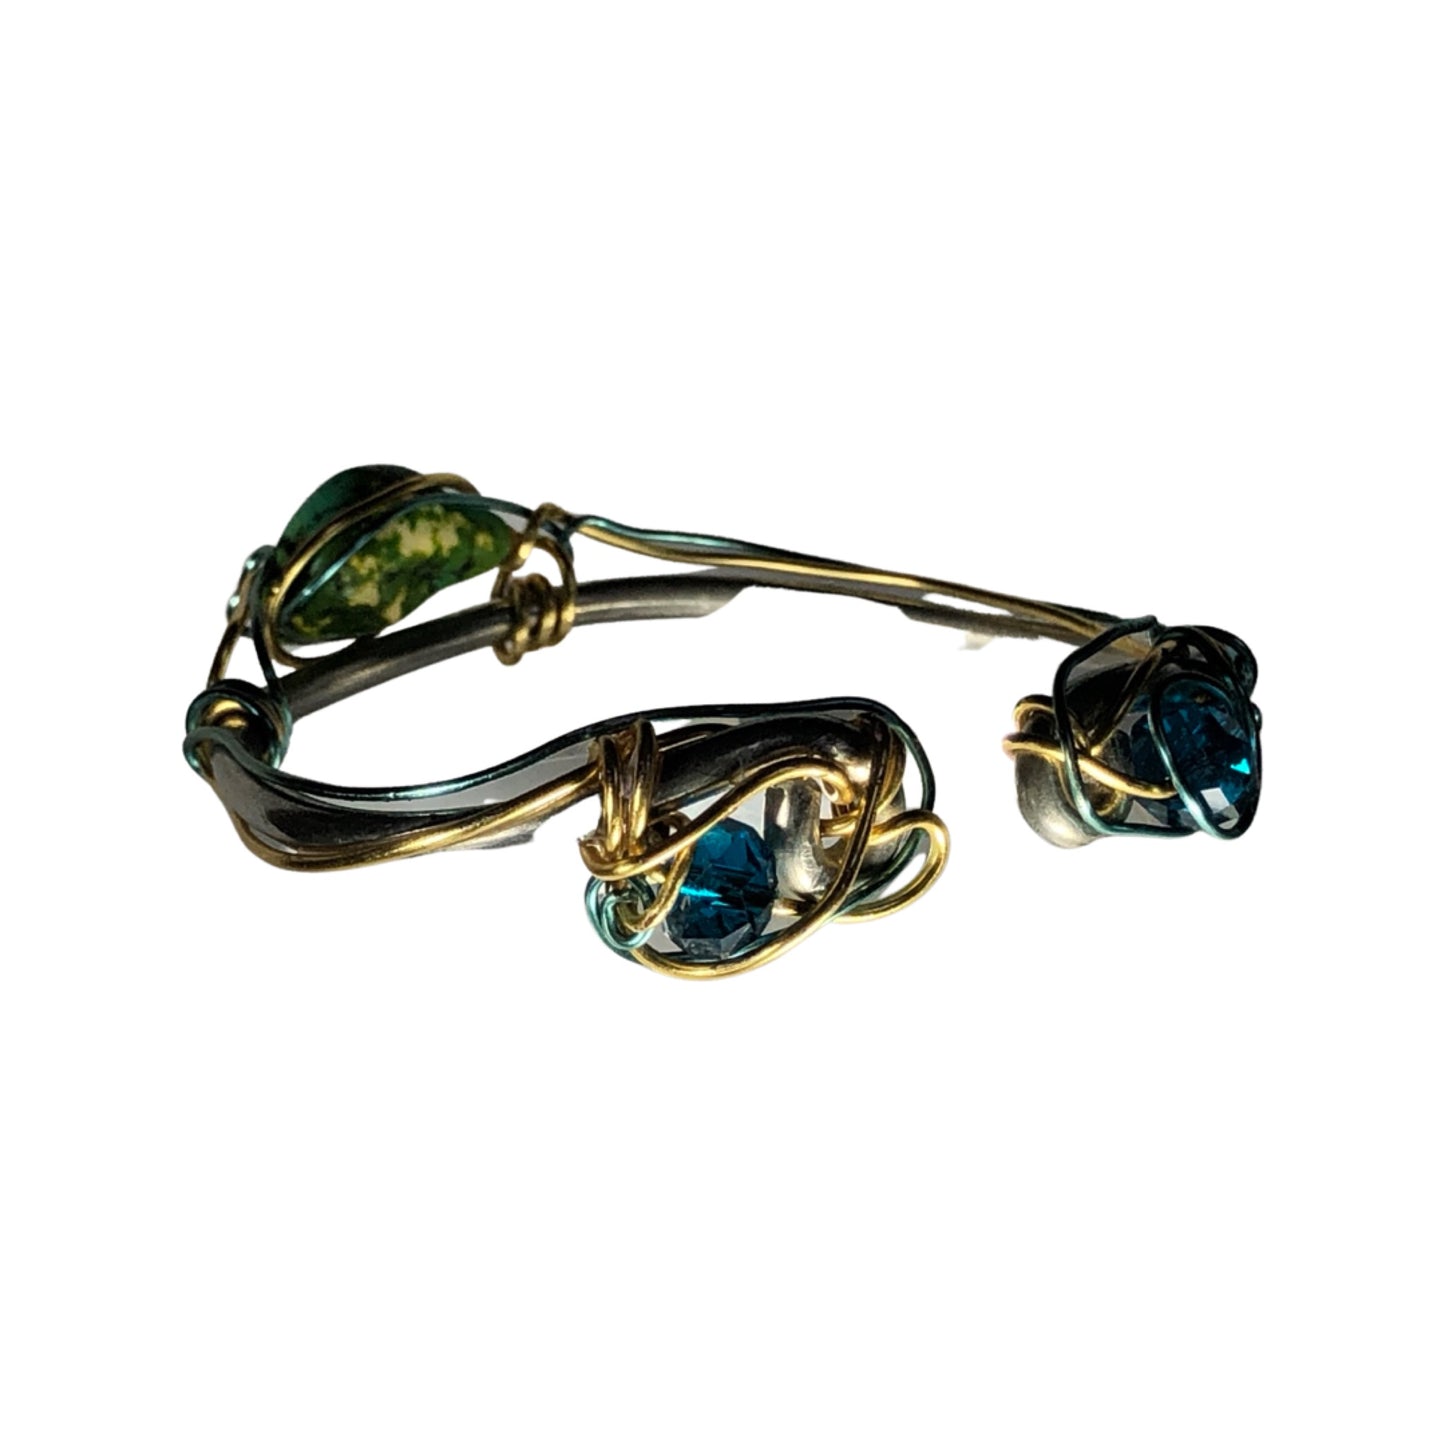 Australian turquoise bracelet